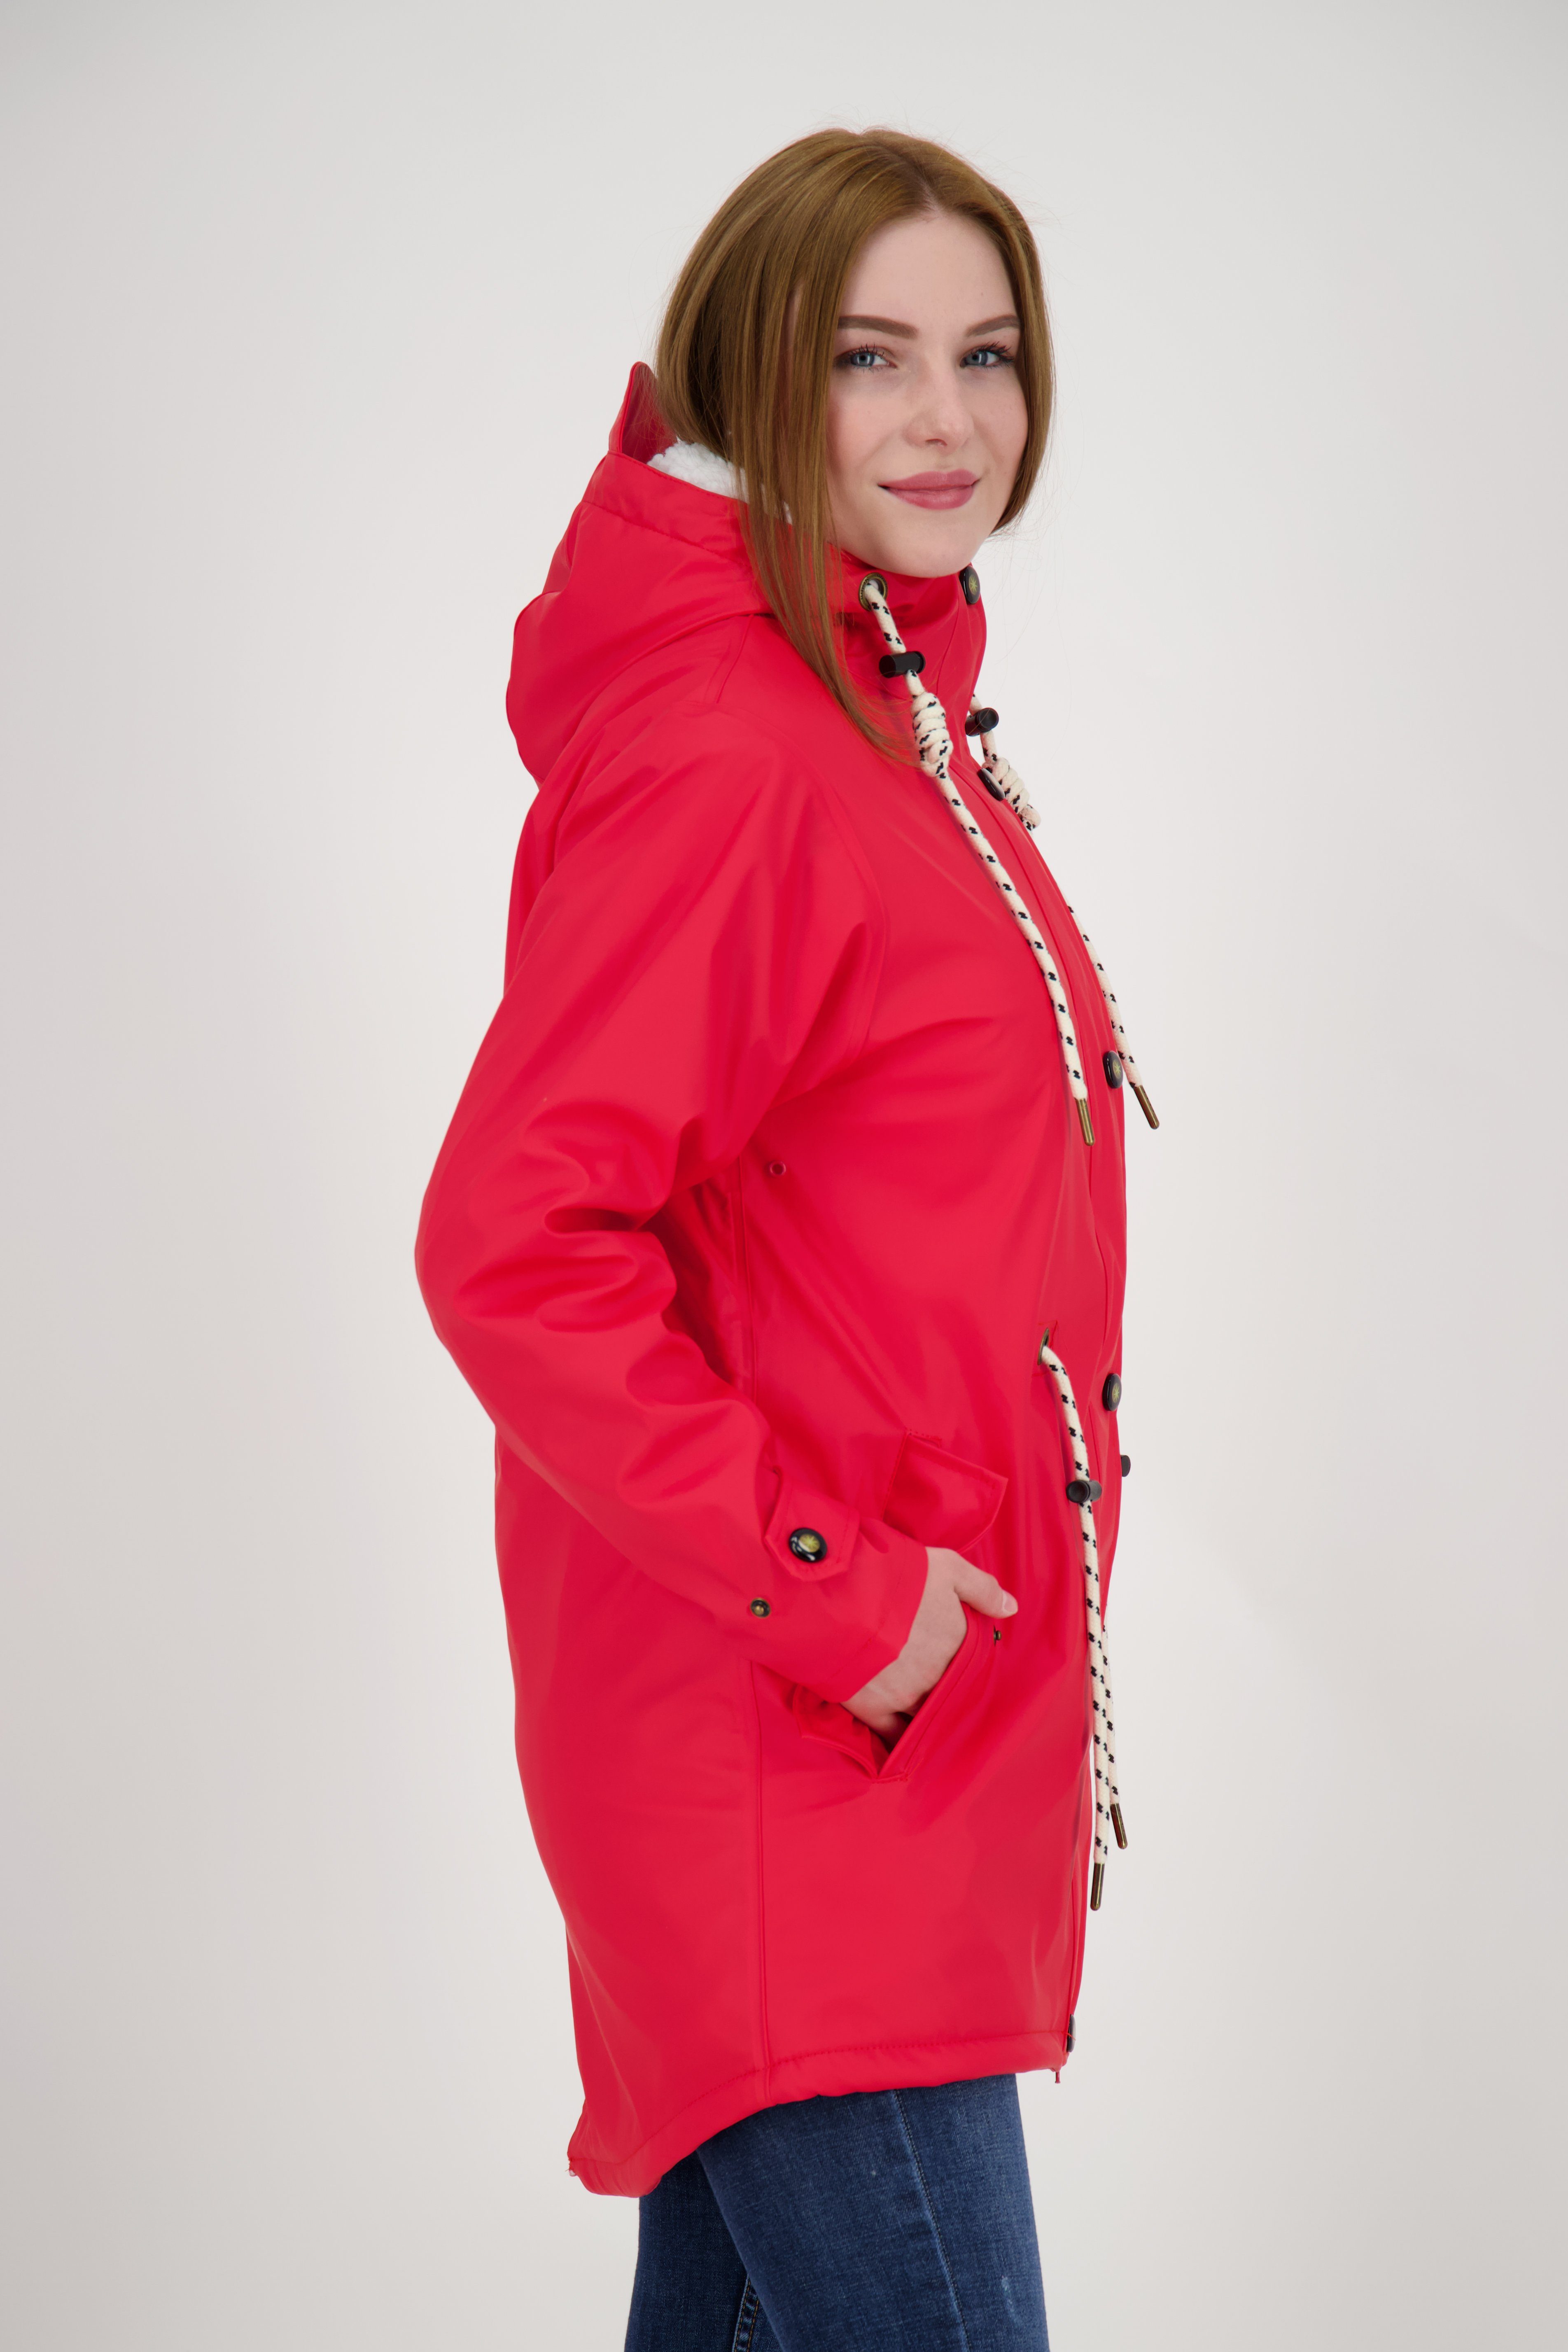 auch Active erhältlich Regenmantel rot in Großen HALIFAX Friesennerz Größen DEPROC NEW WOMEN